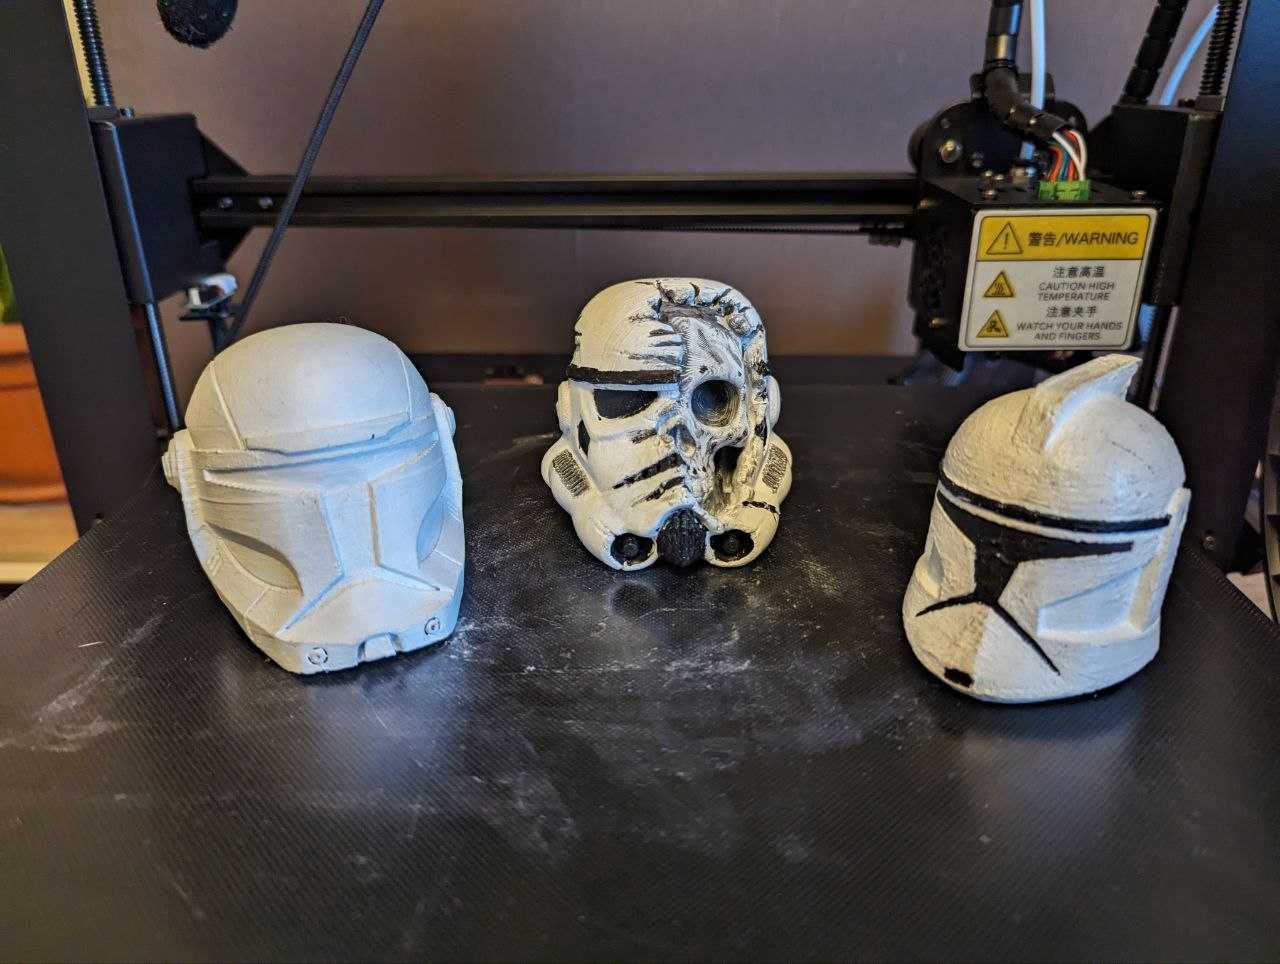 3Д друк / 3D printing. Якісне створення з пластику будь яких речей